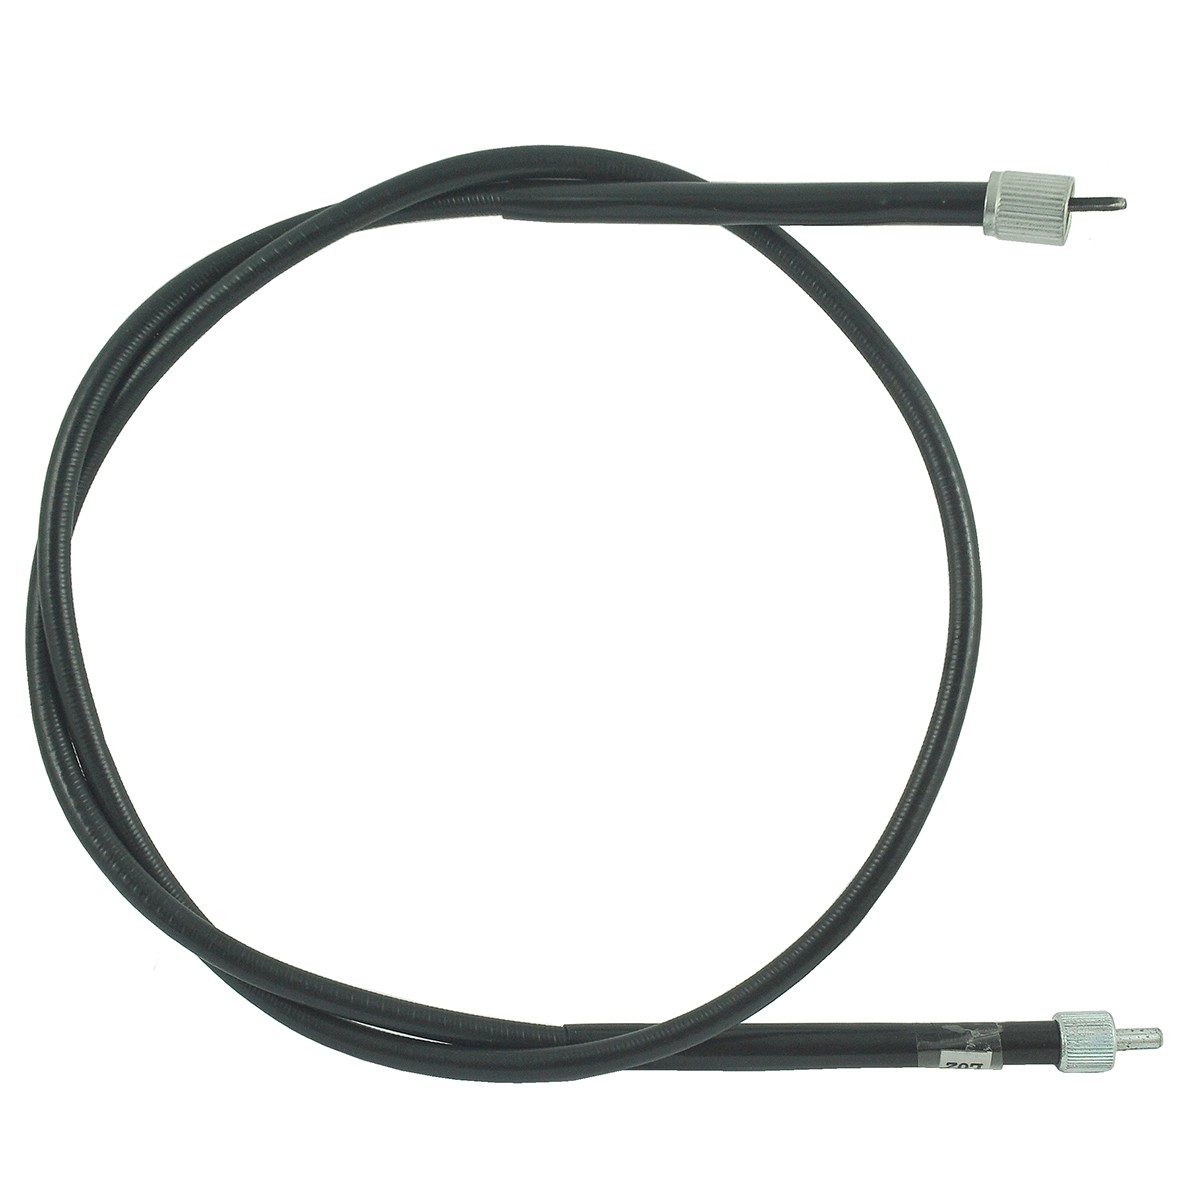 Cable contador / 1200 mm / Kubota L02//L1802/L2002/L2202/L2402 / 38240-34654 / 5-25-123-02